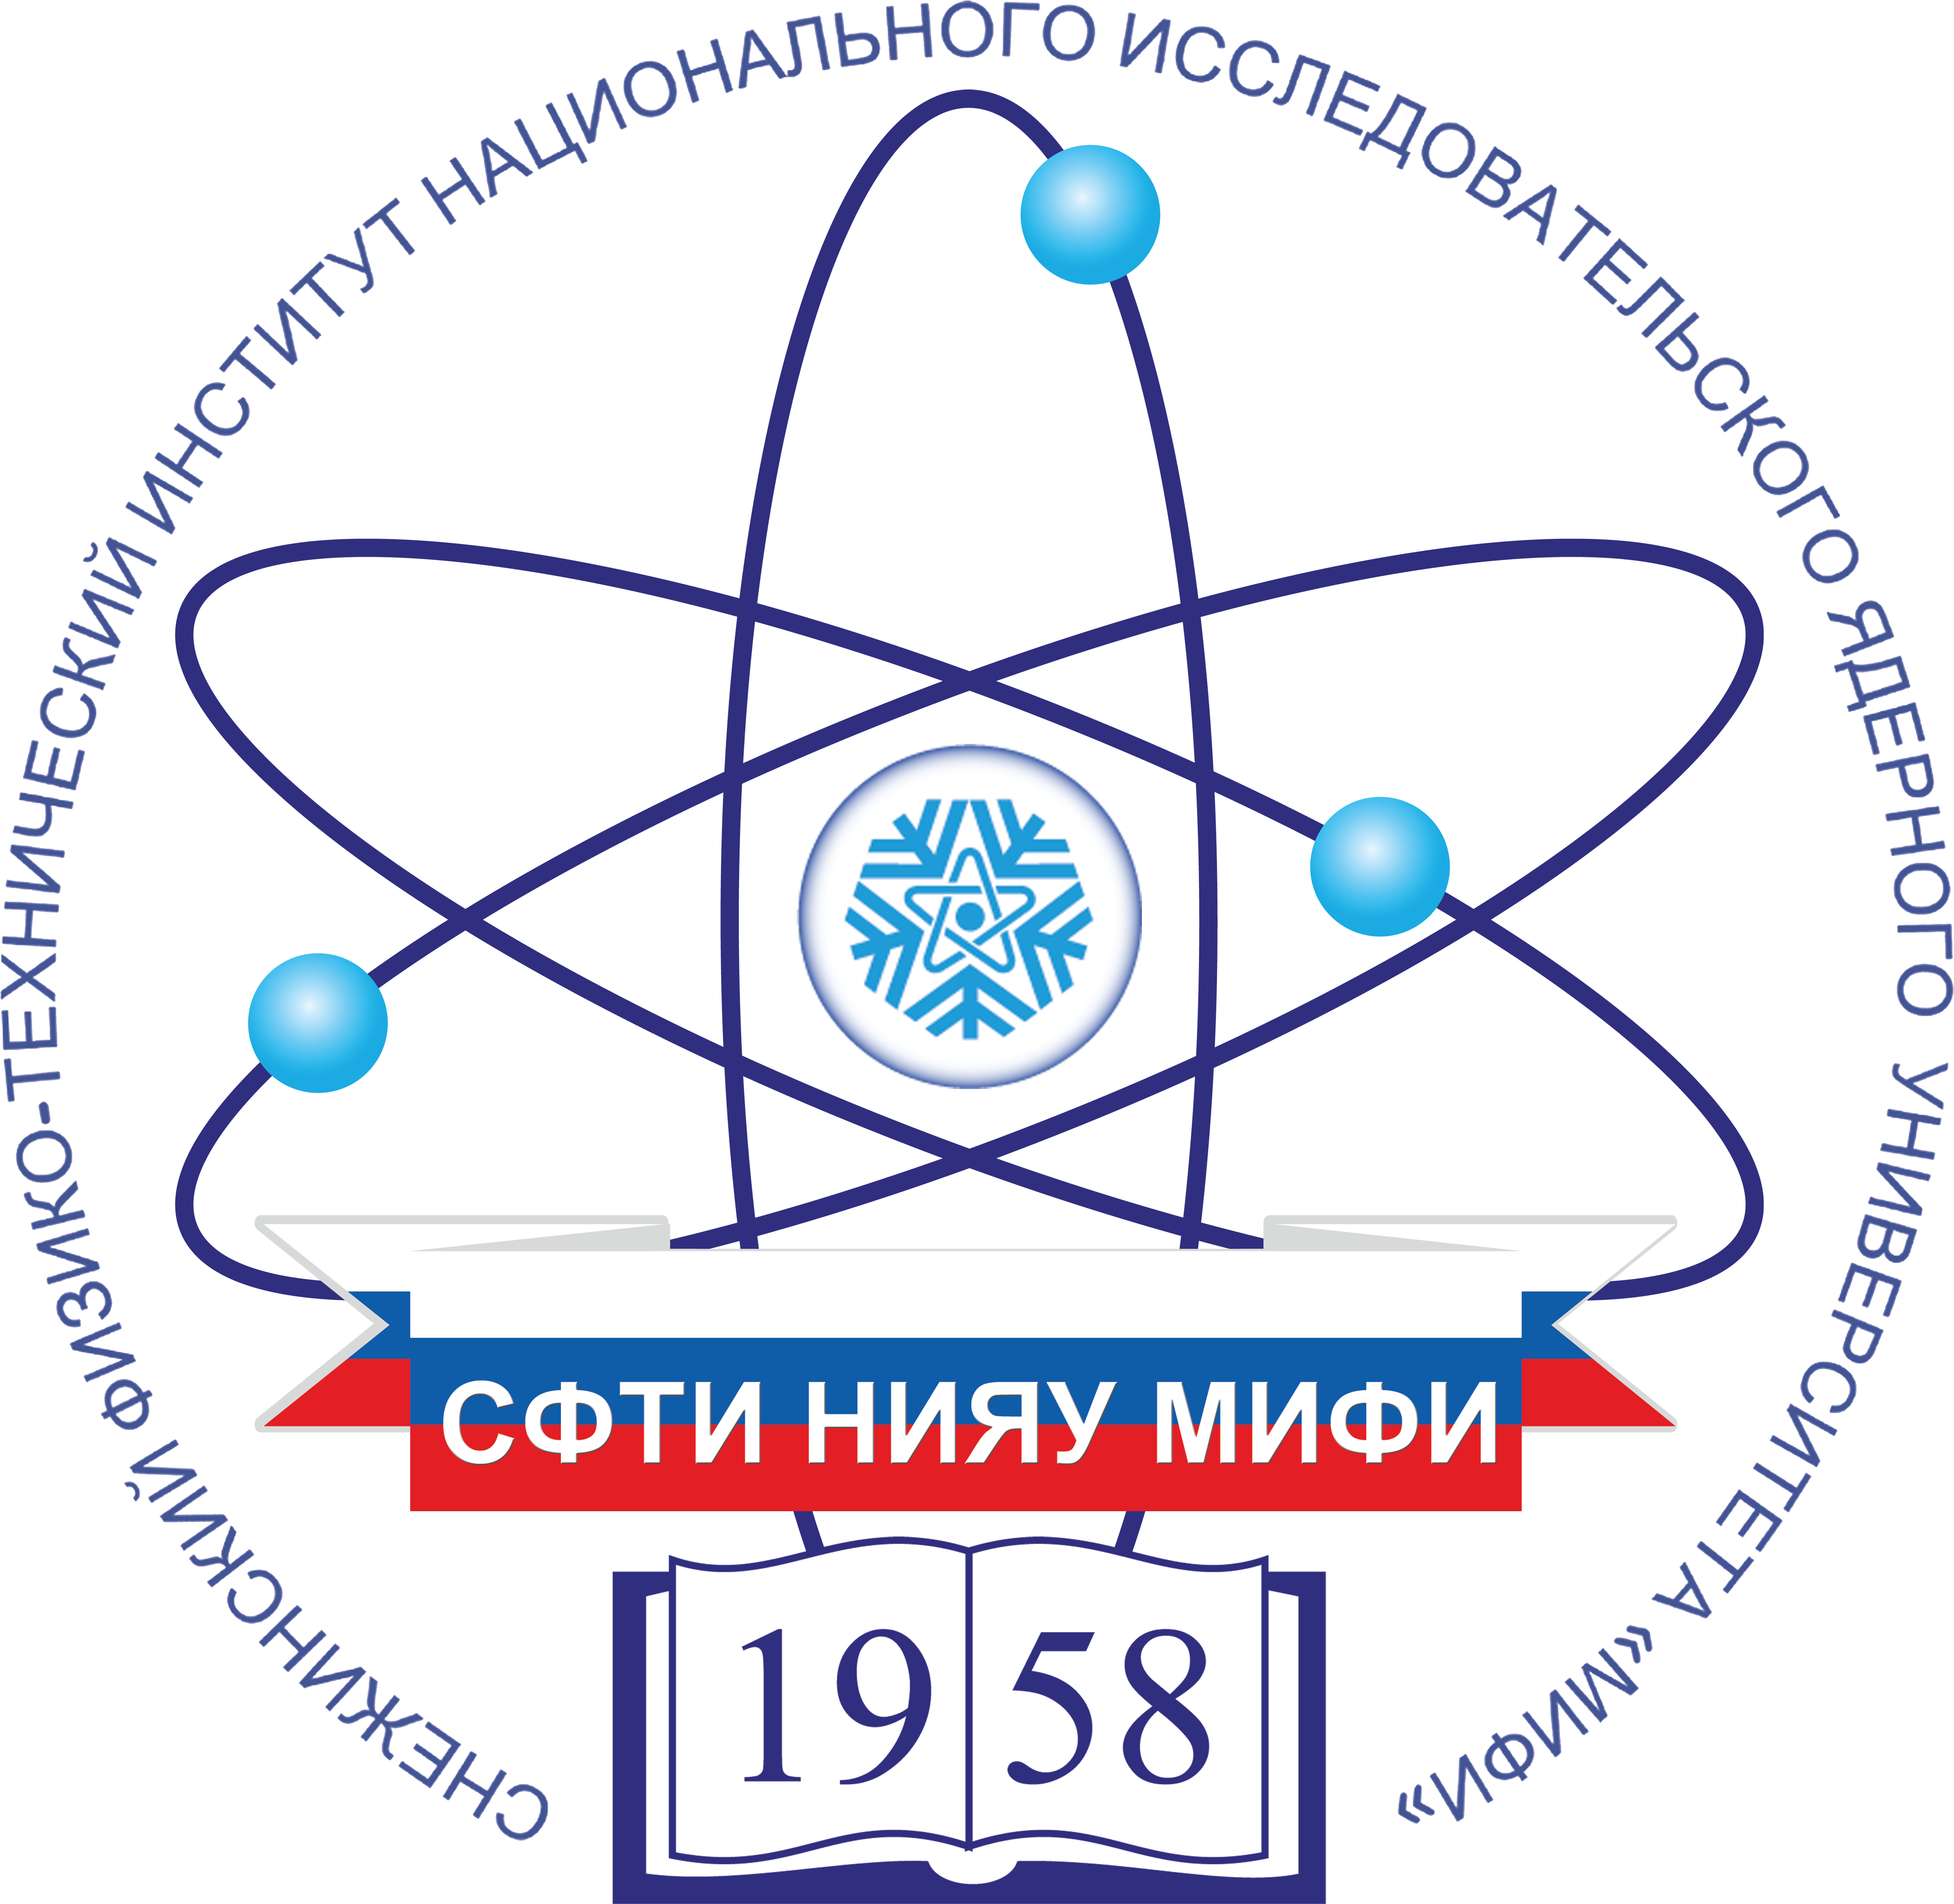 Снежинский физико-технический институт МИФИ